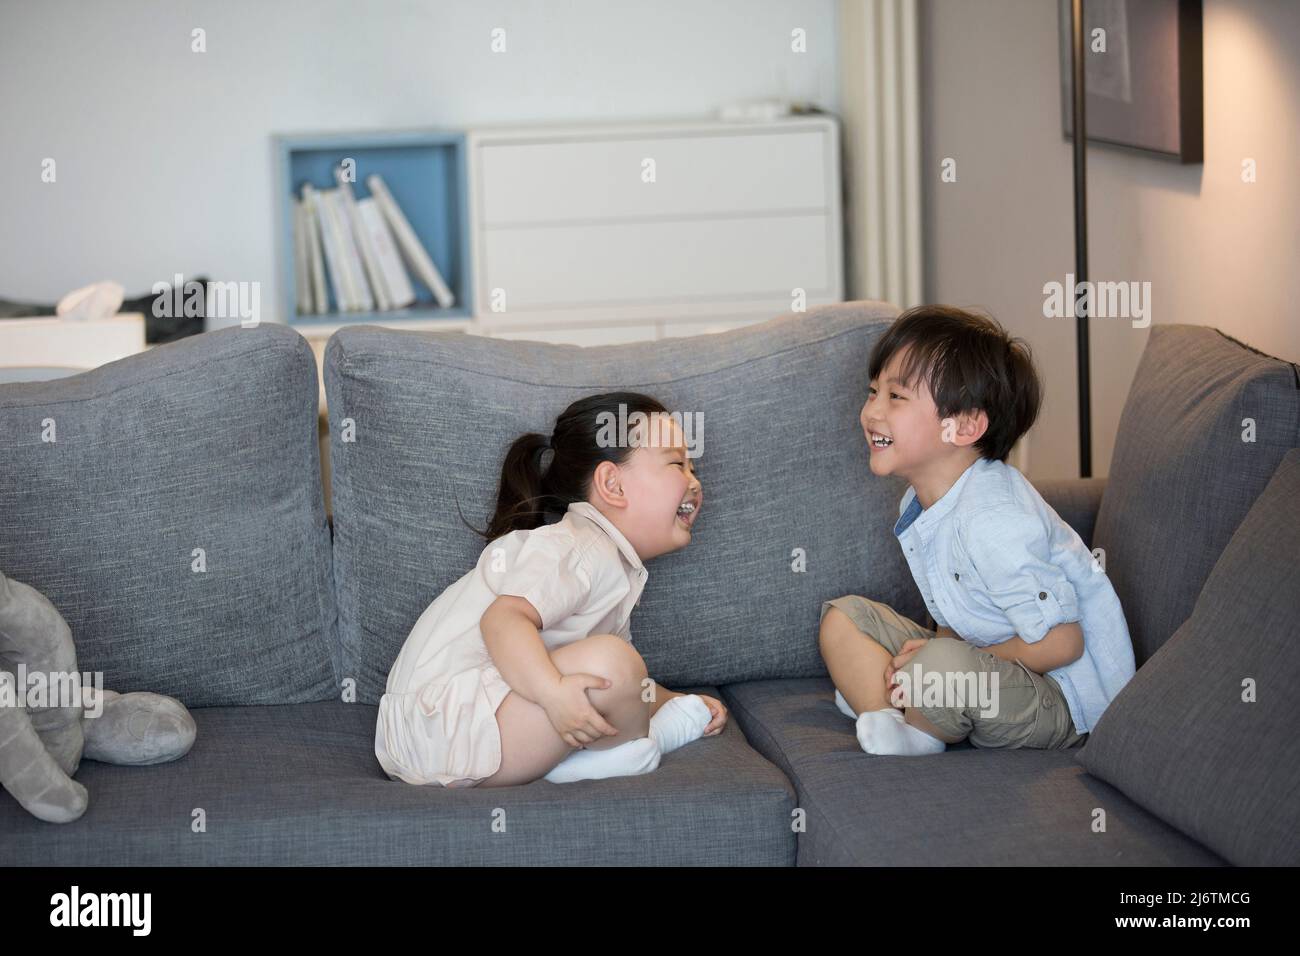 Une petite fille et un petit garçon assis sur le canapé du salon riant - photo de stock Banque D'Images